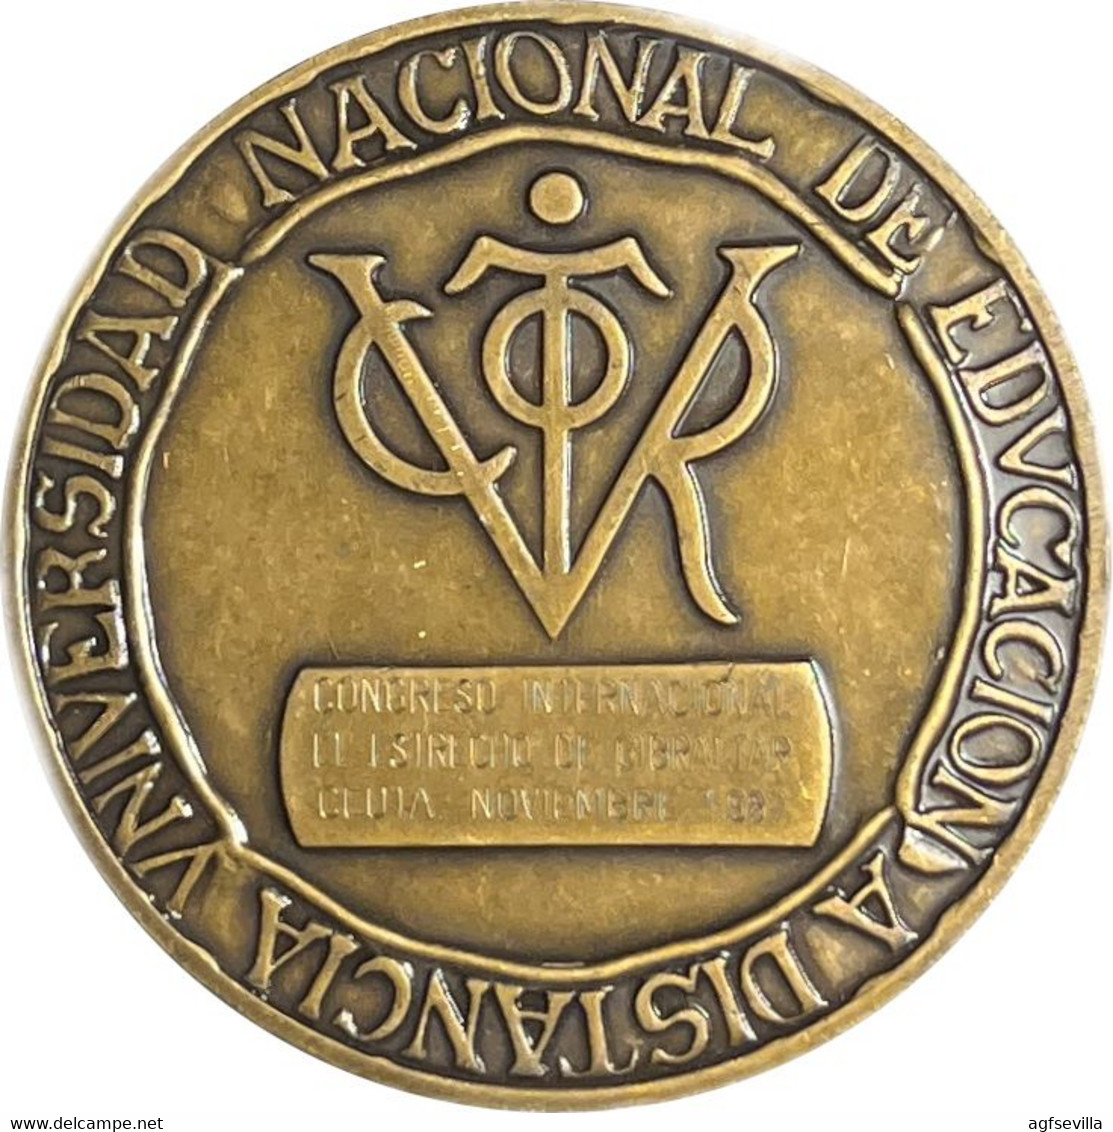 ESPAÑA. MEDALLA UNIVERSIDAD NACIONAL DE EDUCACIÓN A DISTANCIA. 1.987. BRONCE. ESPAGNE. SPAIN MEDAL - Professionals/Firms